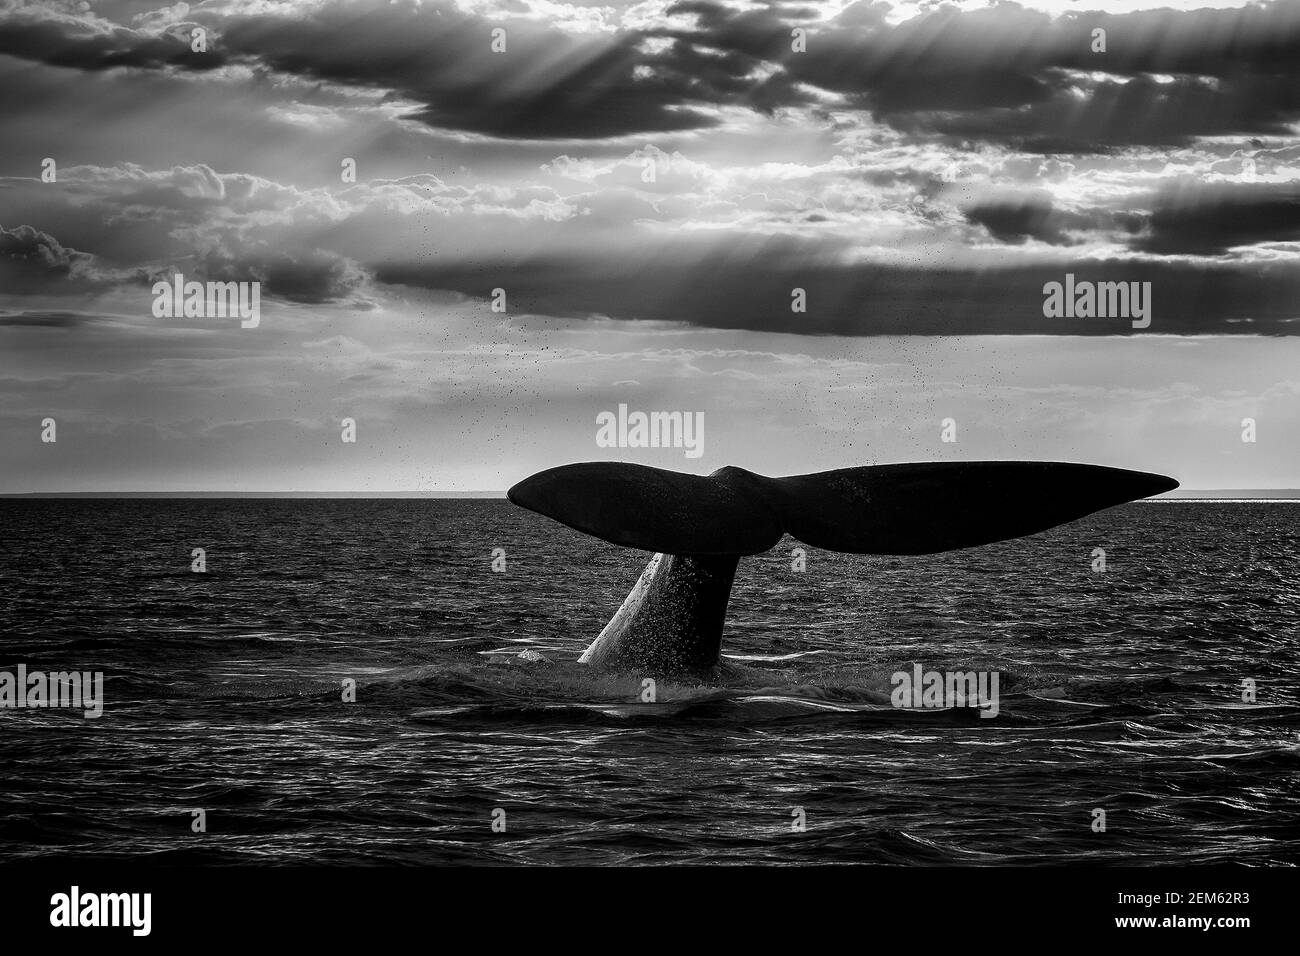 Balena di destra meridionale, Penisola Valdes, Patrimonio dell'Umanità dell'UNESCO, Patagonia, Argentina. Foto Stock